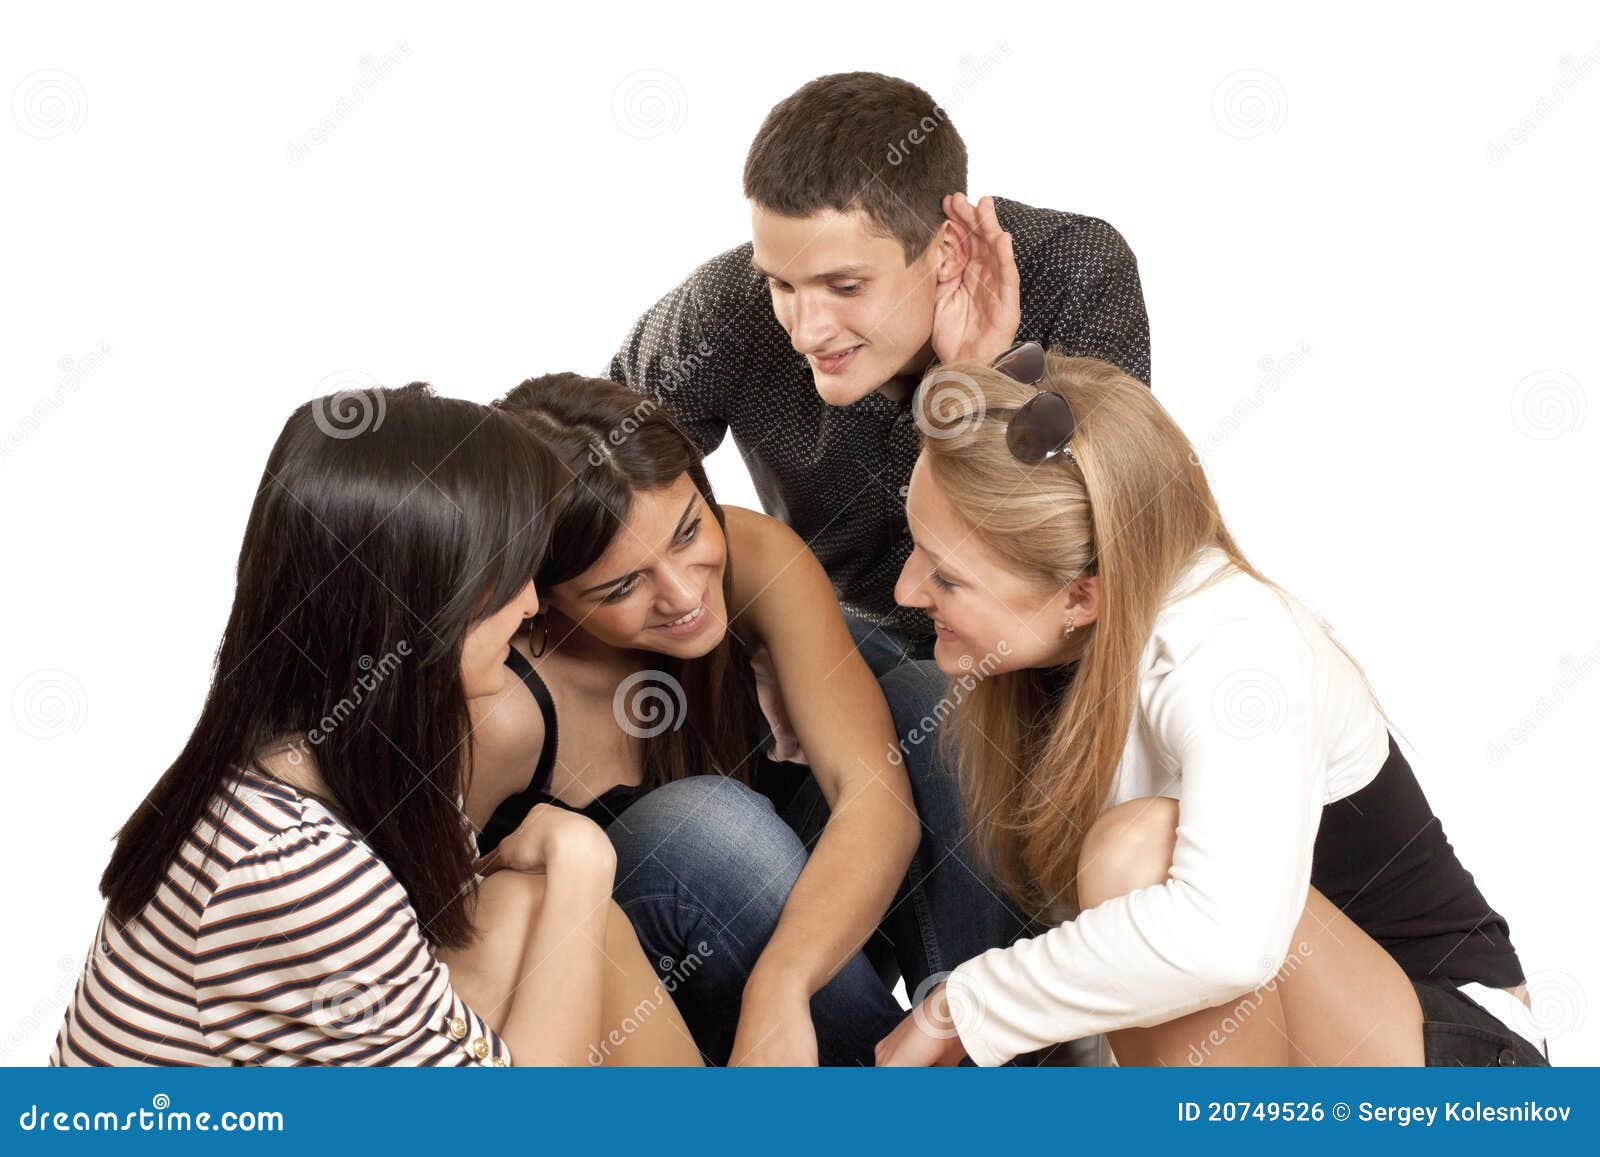 Подслушанные разговоры 3. Группа молодых девочек на белом фоне. Четыре парня на белом фоне. Парень подслушивает разговор. Мужчина подслушивает разговор женщин.